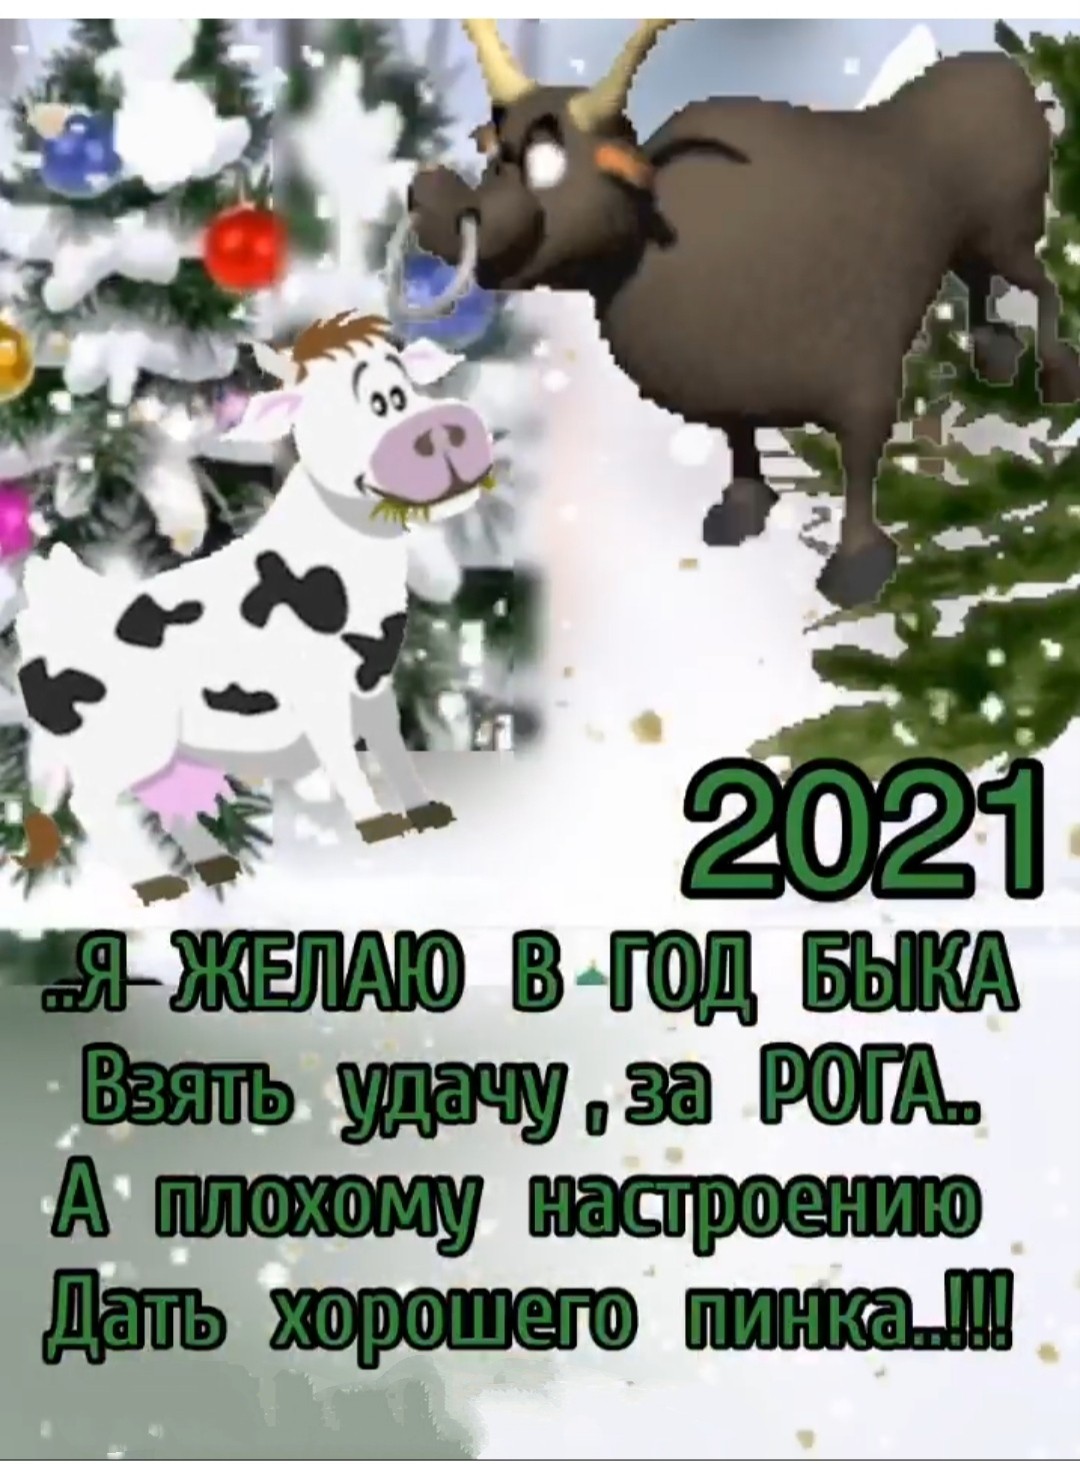 Поздравление от Быка с Новым годом прикольное в картинках - Поздравления с Новым годом 2021 с изображением Быка, короткие стихи, проза